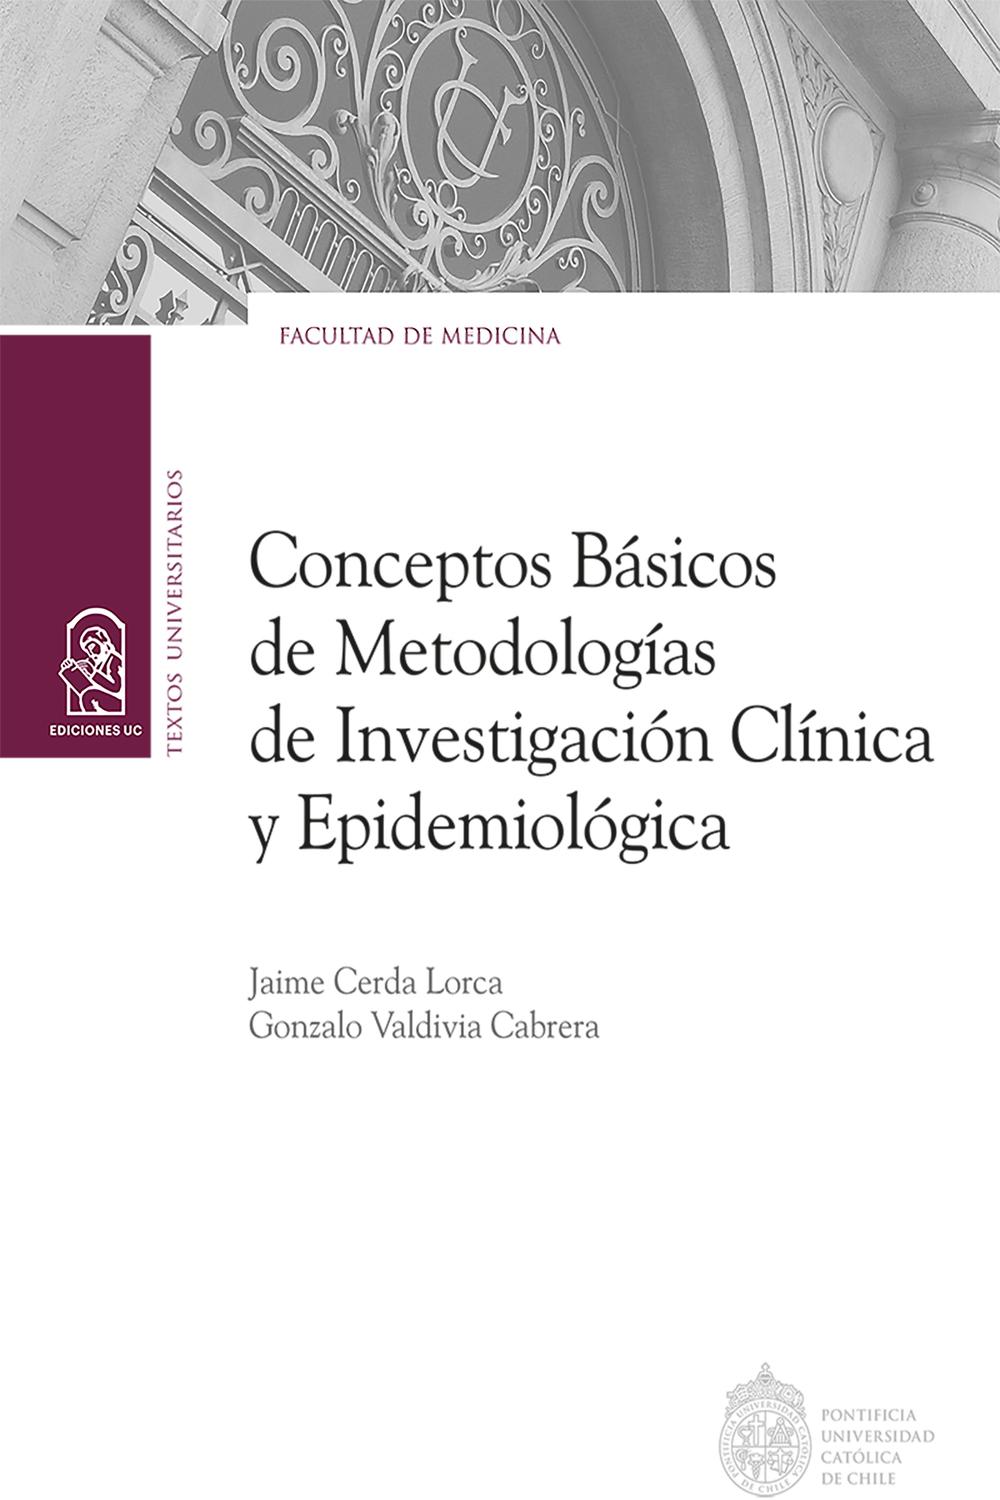 Conceptos básicos de metodologías de investigación clínica y epidemiológica - Jaime Cerda Lorca, Gonzalo Valdivia Cabrera